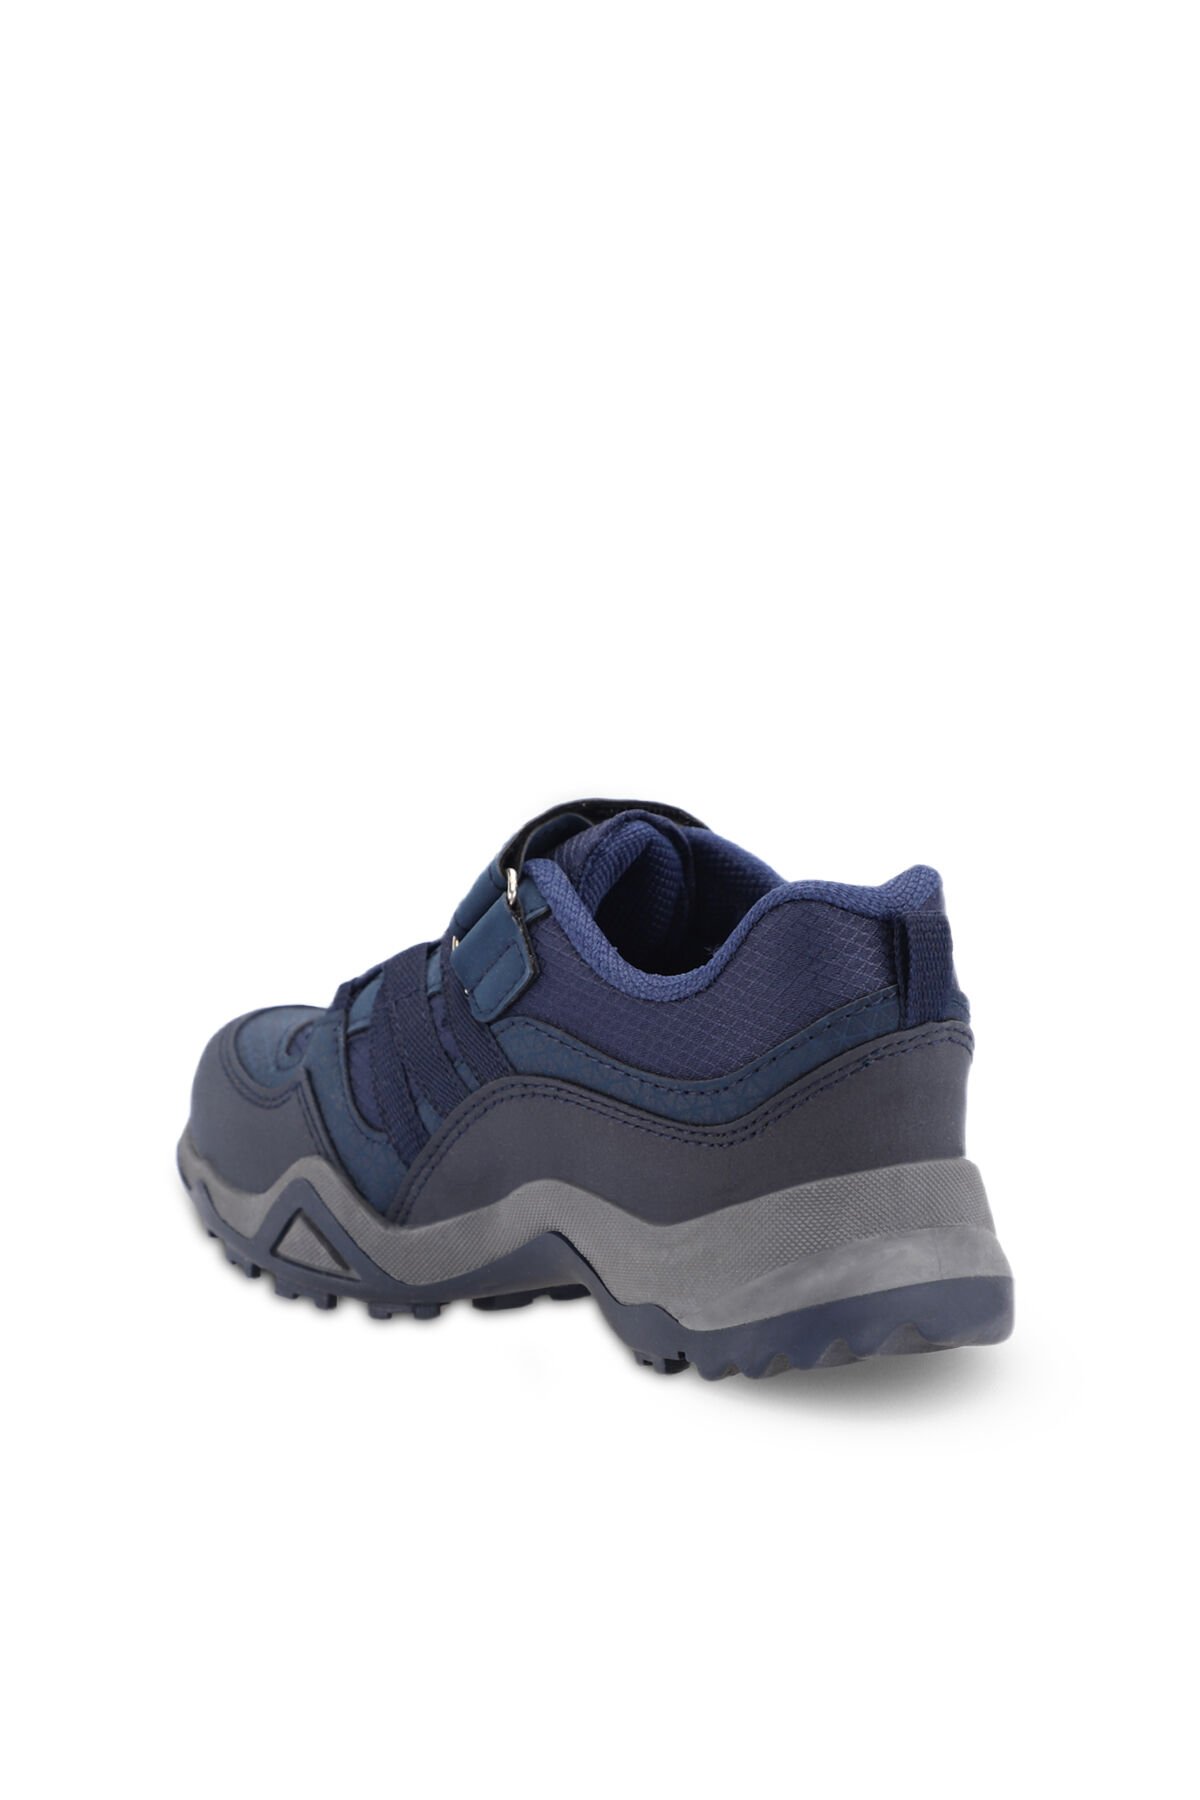 ALDONA Sneaker Erkek Çocuk Ayakkabı Lacivert - Thumbnail